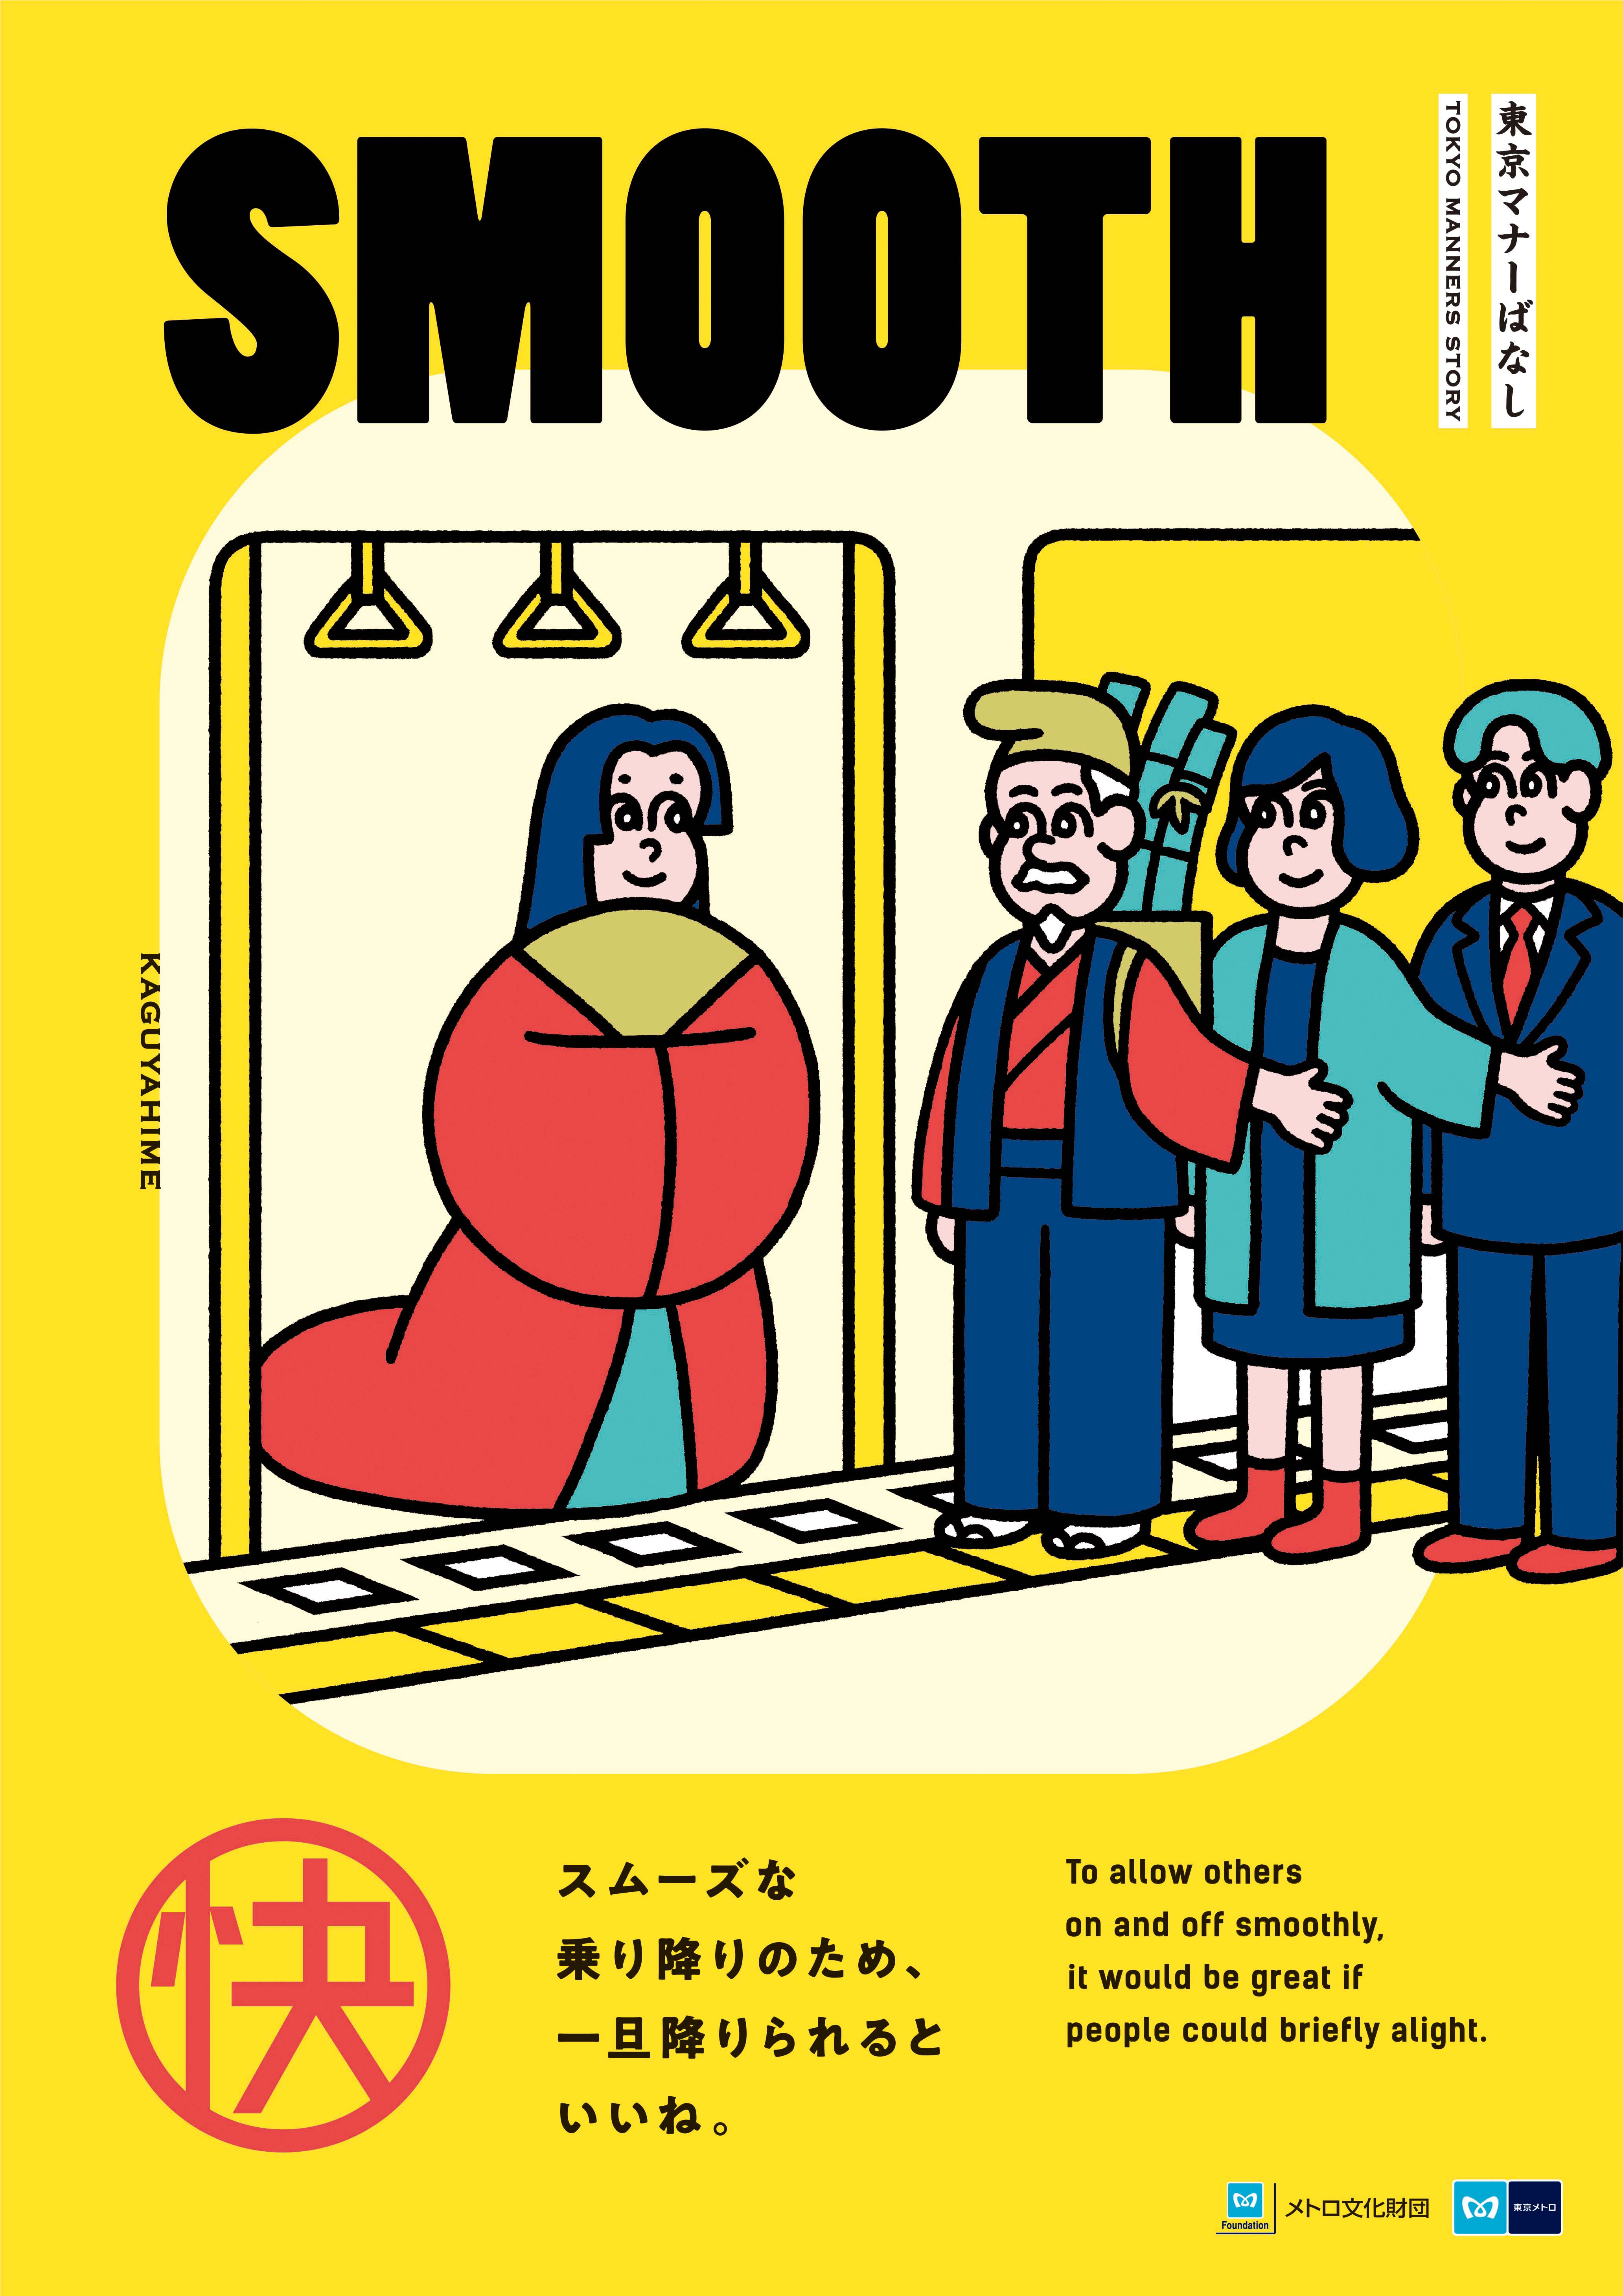 年度のマナーポスターが決定 東京を訪れるすべての方へ 日本の昔ばなし で地下鉄のマナーを展開 東京メトロのプレスリリース